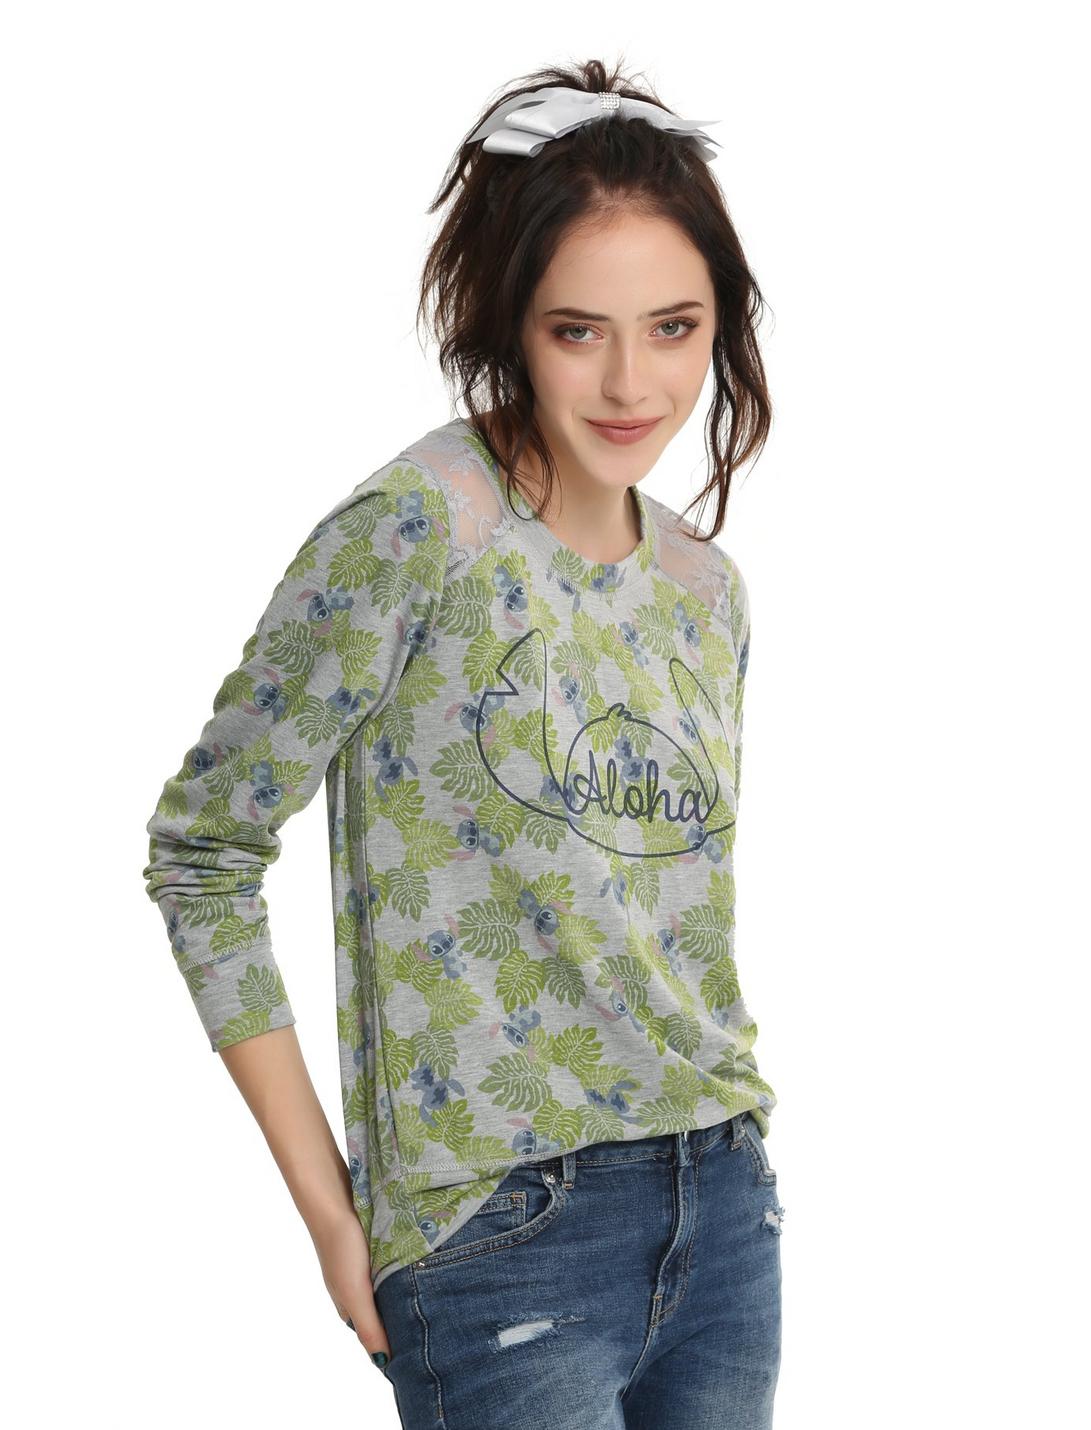 Disney Lilo & Stitch Alhoa Foliage Girls Sweatshirt, GREY, hi-res